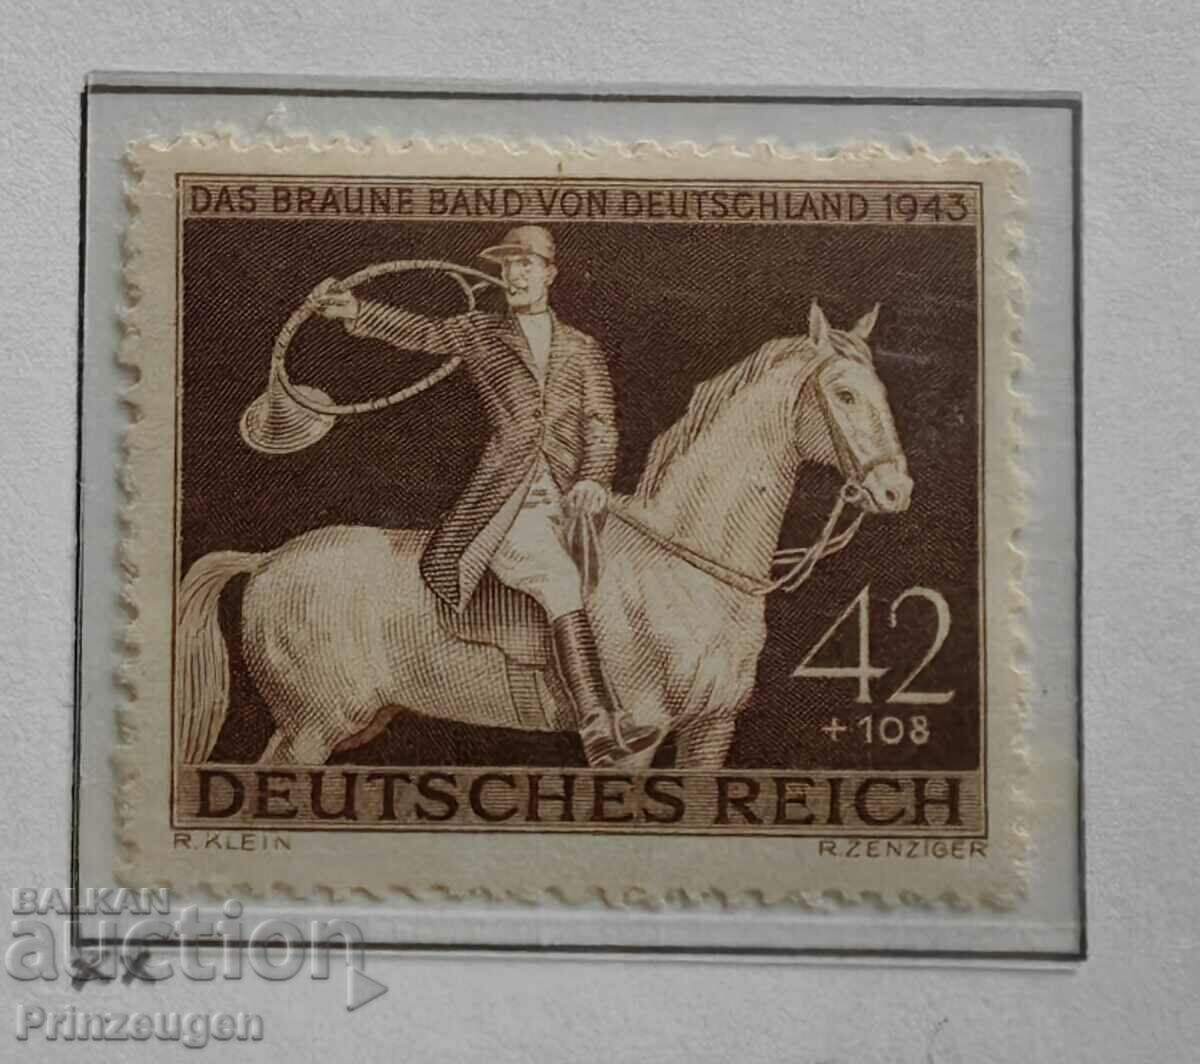 Germania - Al Treilea Reich - 1943 - serie de timbre